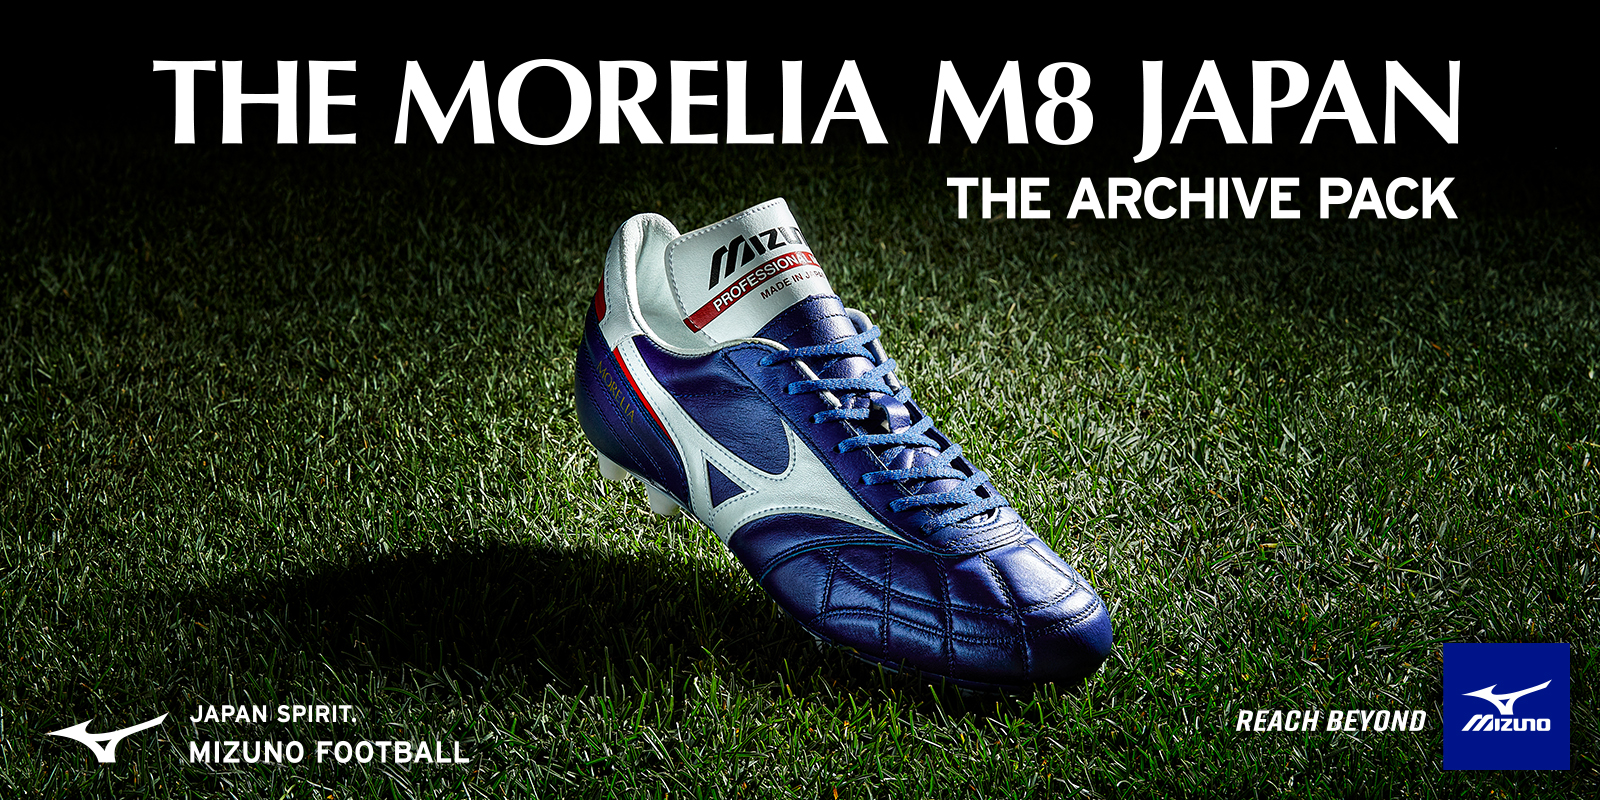 THE MORELIA M8 JP